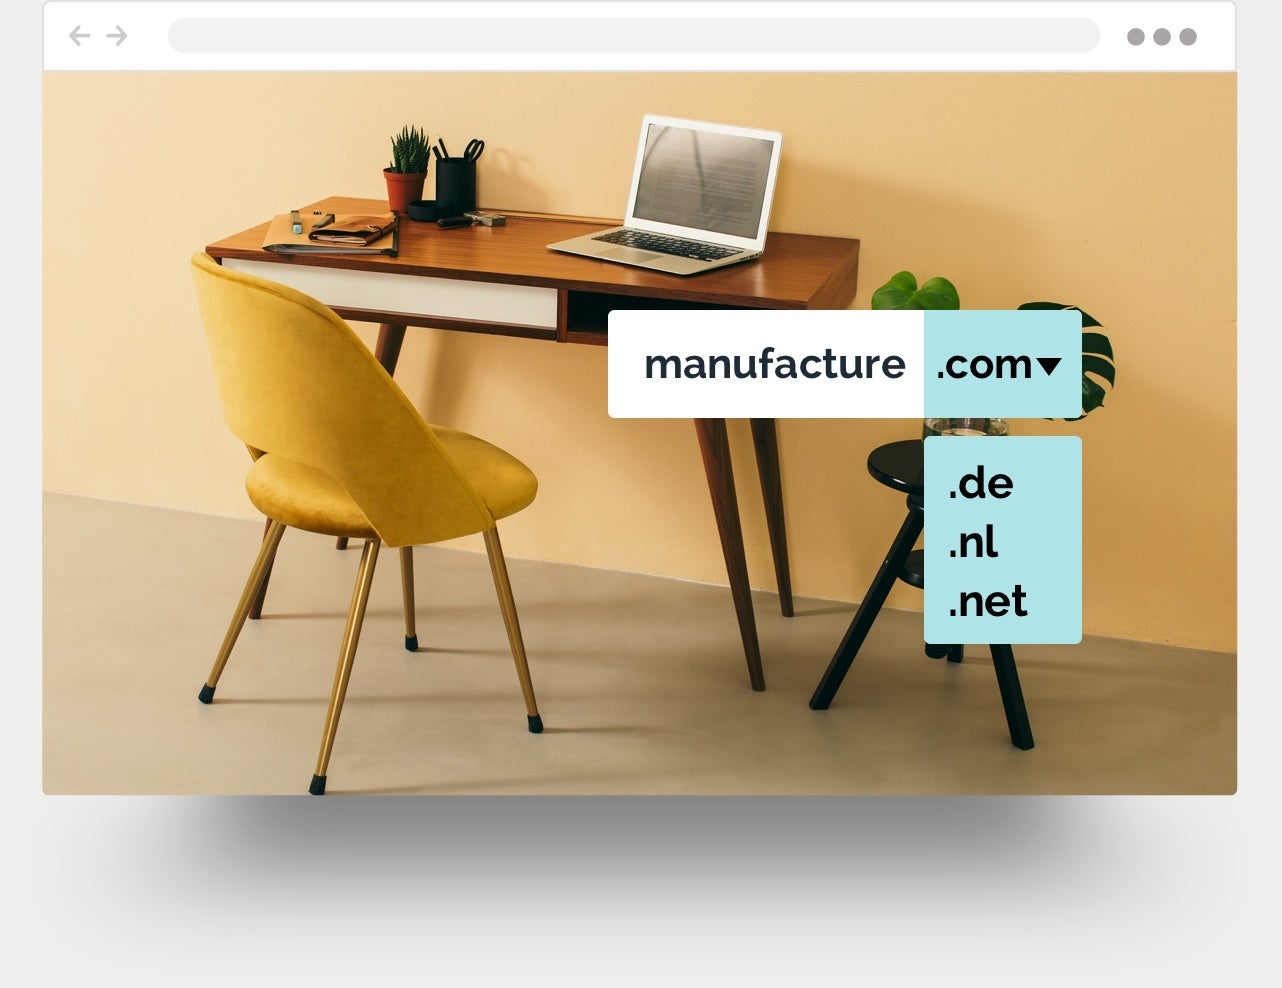 Esempio di sito che vende mobili creato con Jimdo.